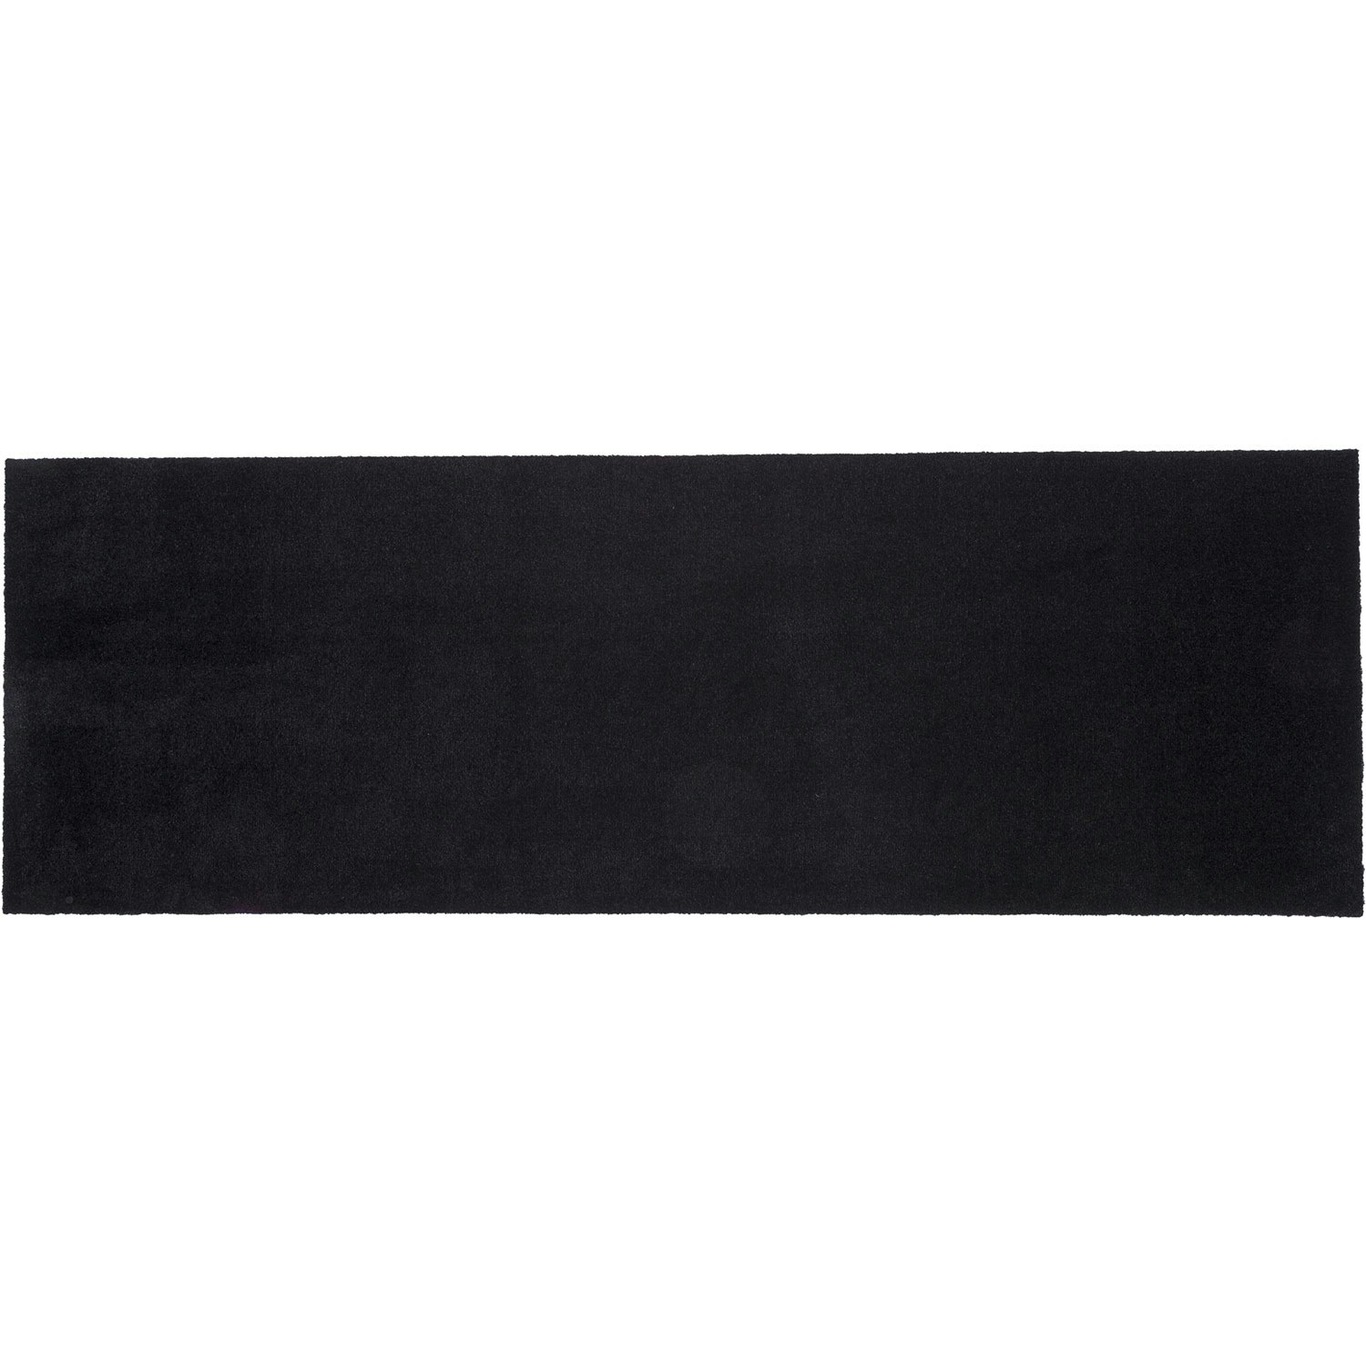 Unicolor Ovimatto Musta, 200x90 cm